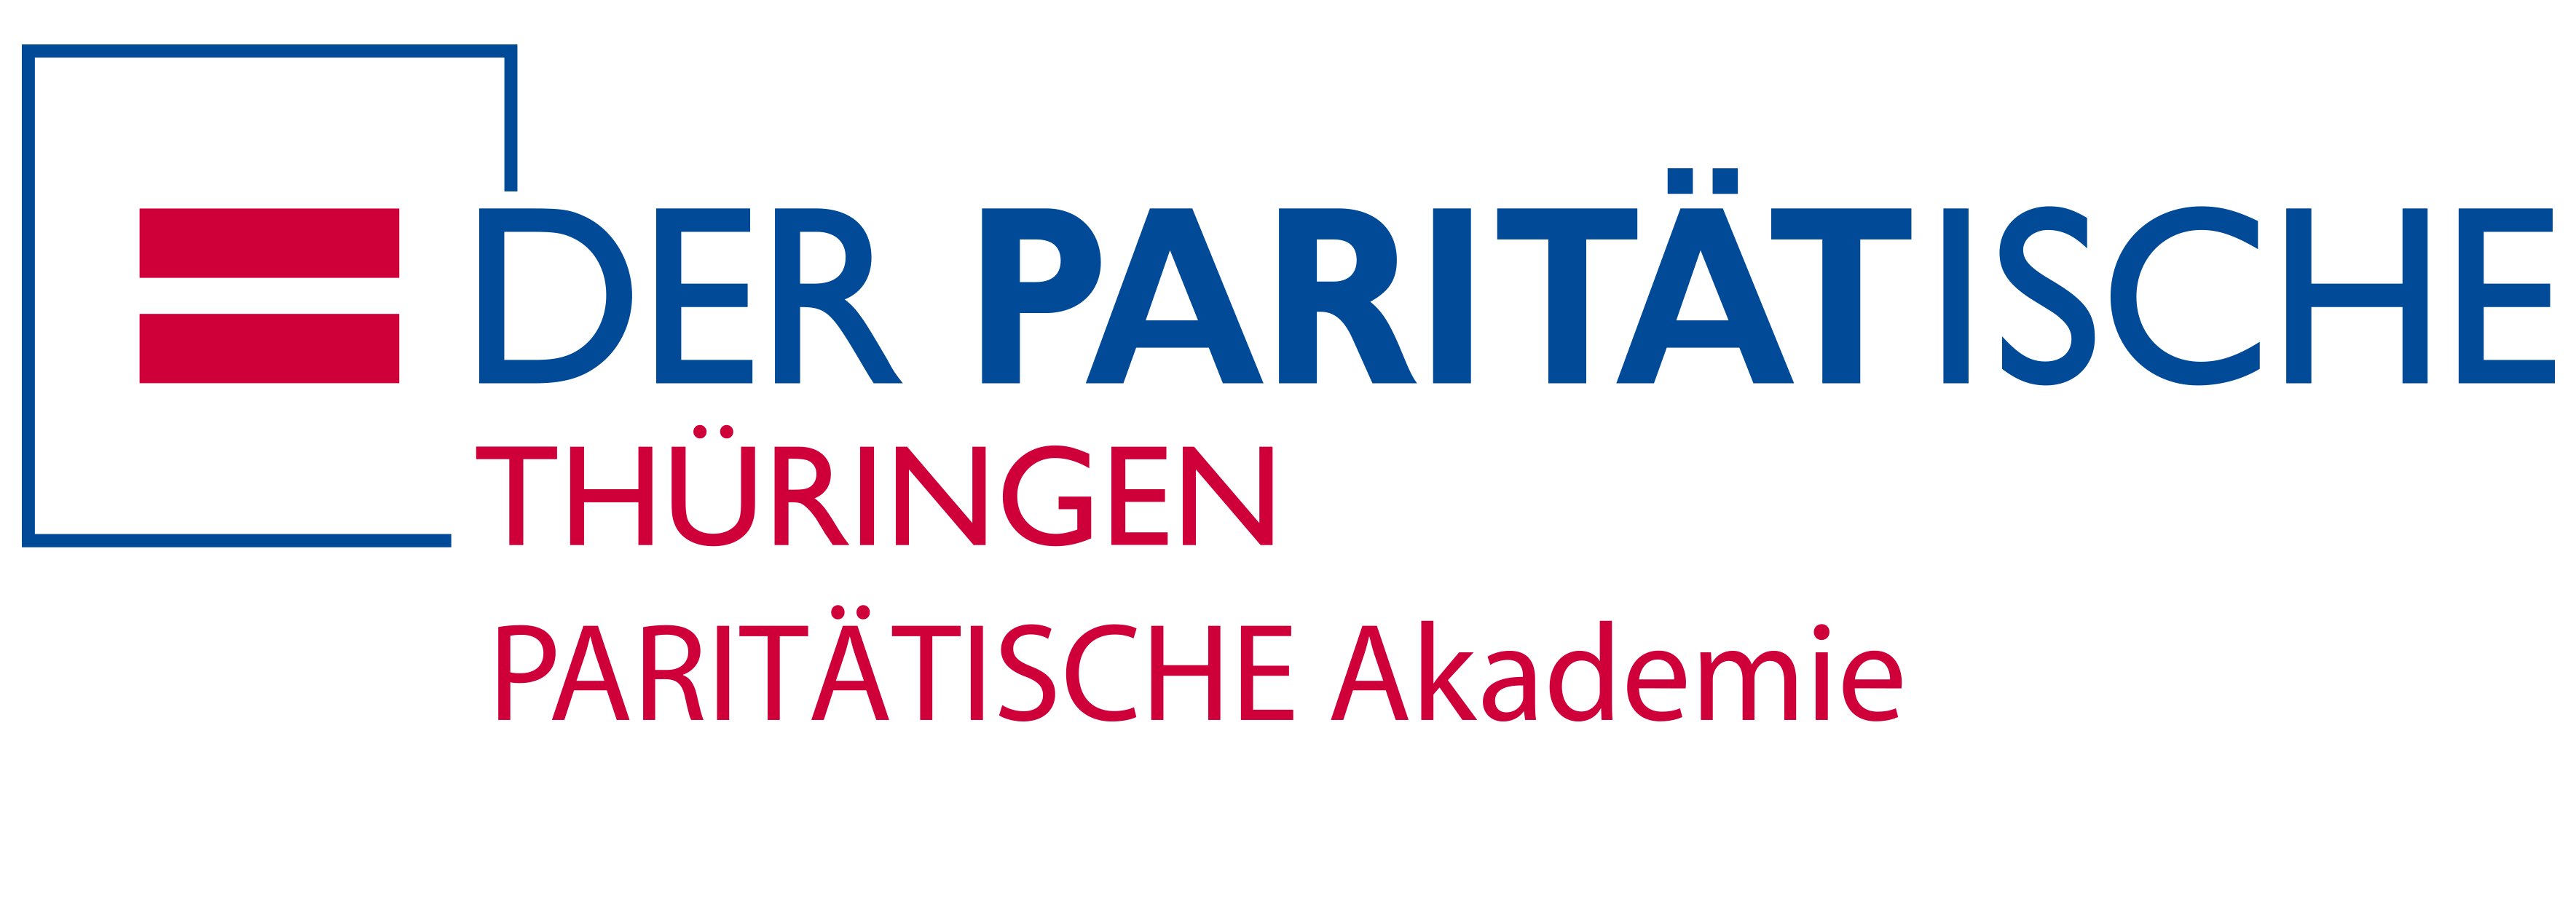 Logo: Paritätische Akademie Thüringen